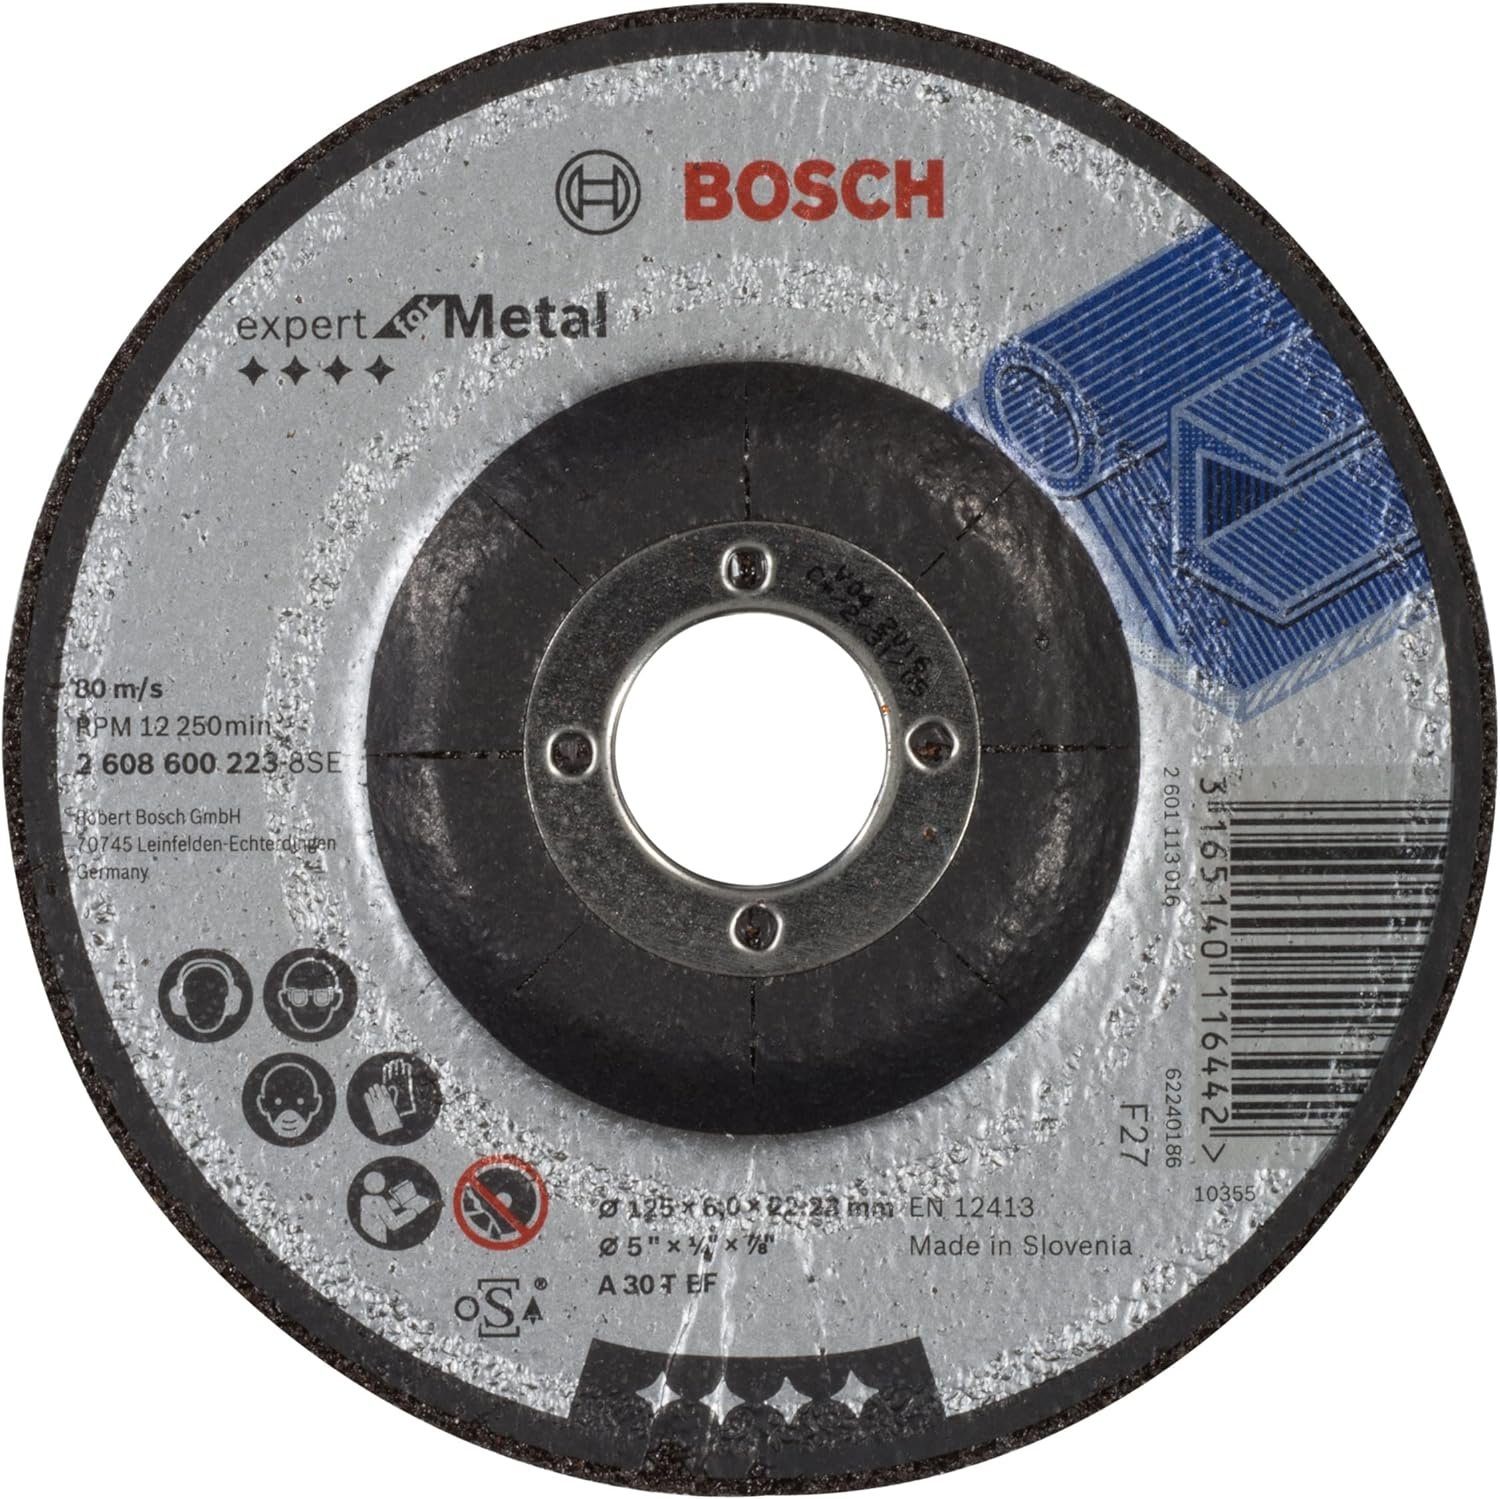 BOSCH Bohrfutter Bosch T A for BF gekröpft 4mm Expert Metal Schruppscheibe 30 mm 125